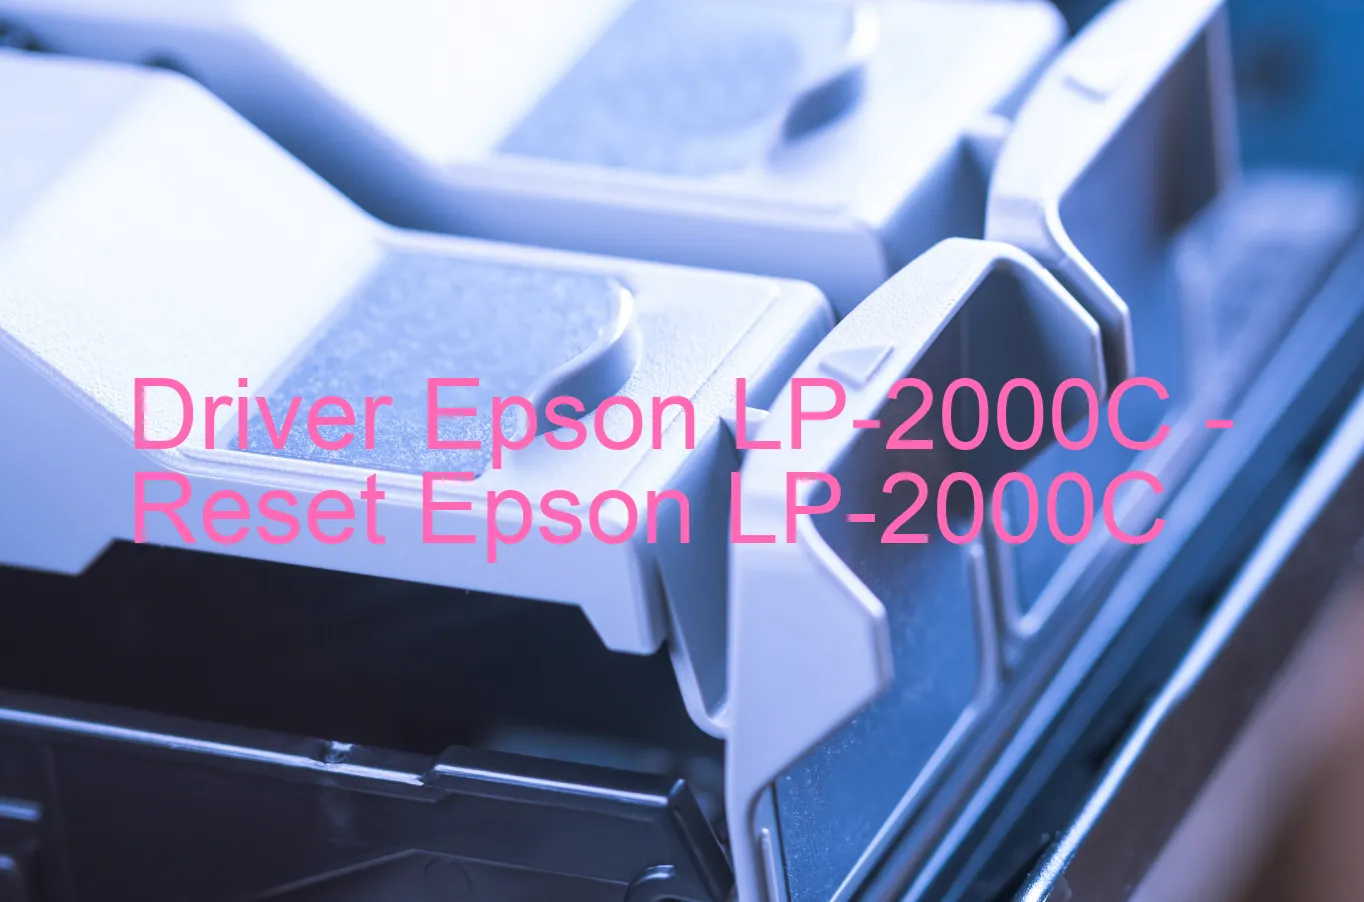 Epson LP-2000Cのドライバー、Epson LP-2000Cのリセットソフトウェア